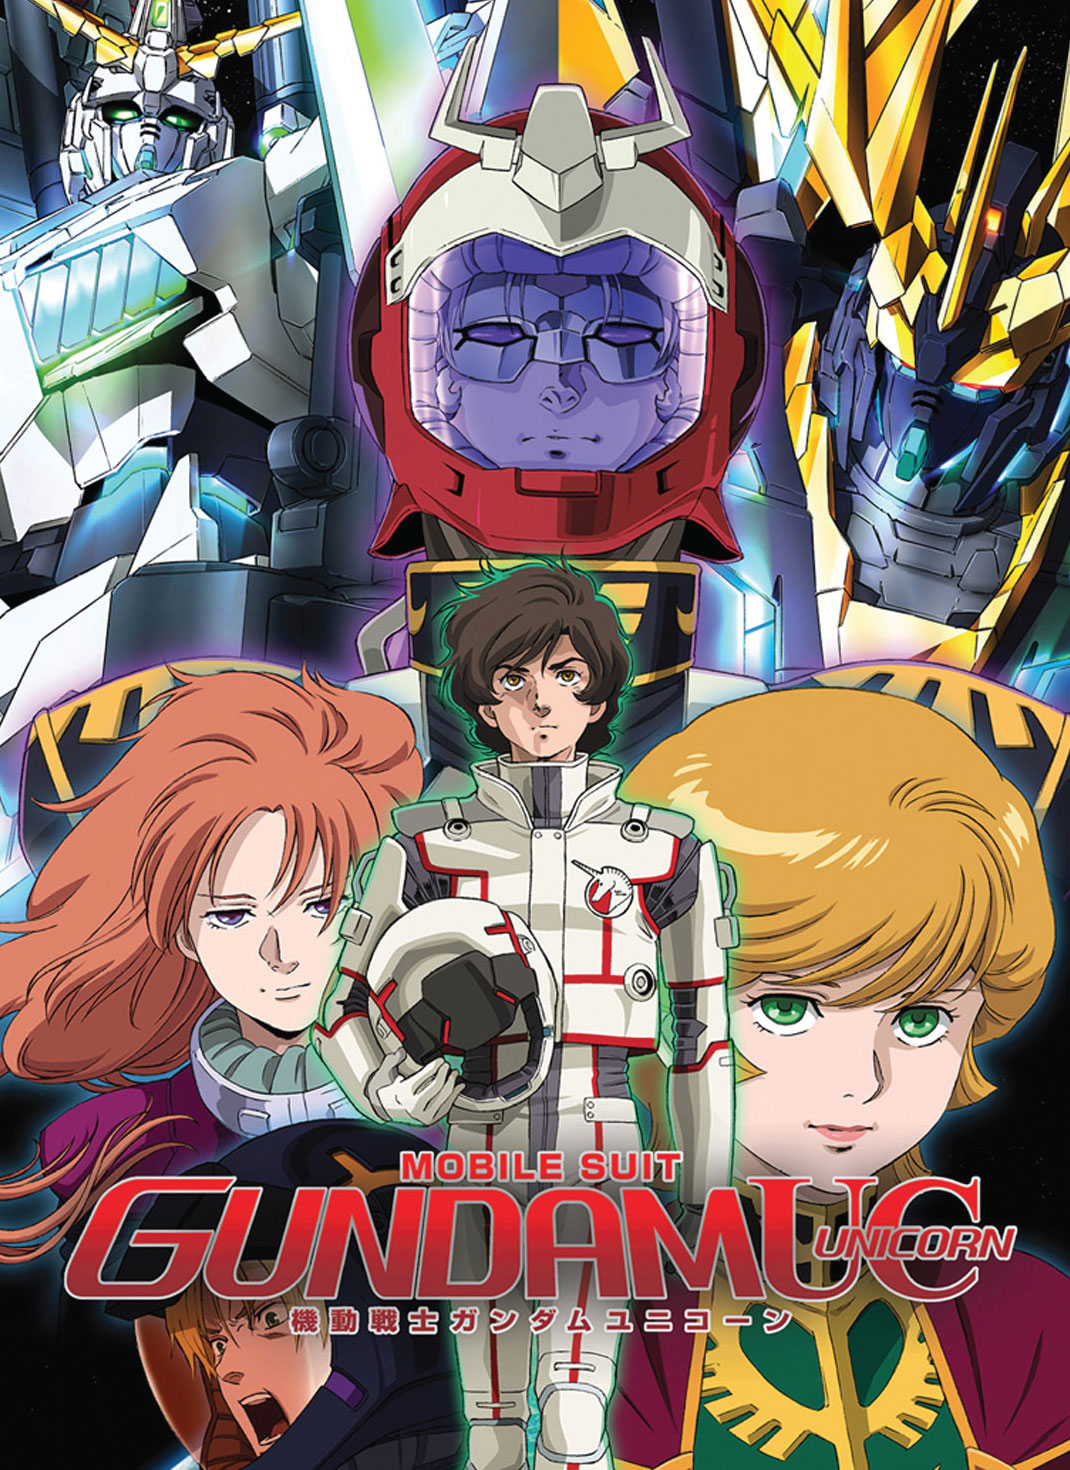 Wallpaper ID 157152  Gundam Gundam 00 exia Mobile Suit Gundam Mobile  Suit Gundam 00 robot anime free download